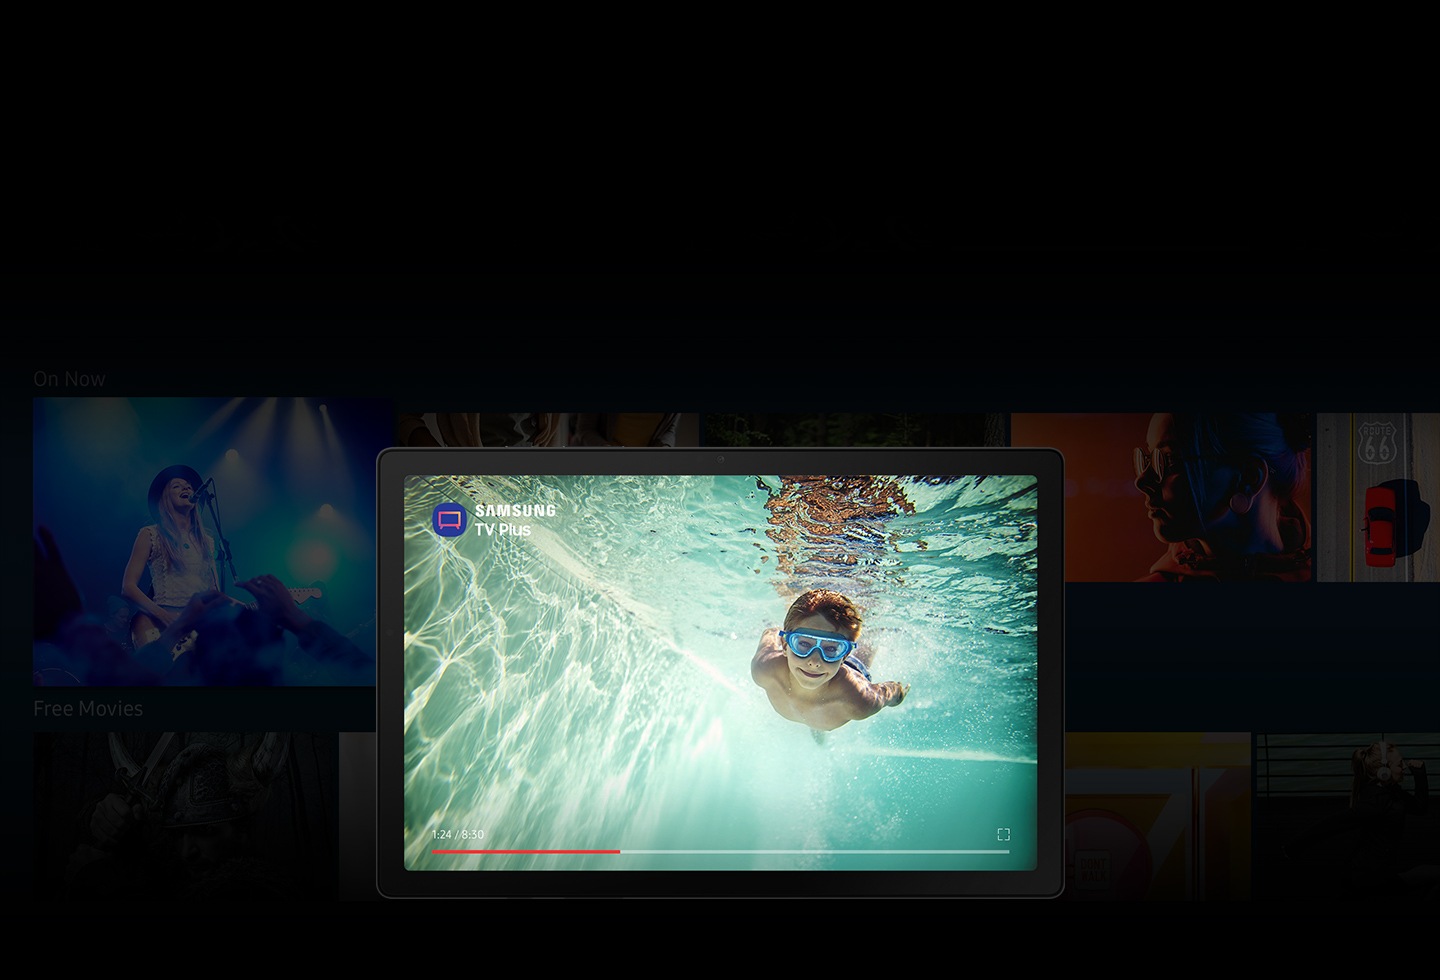 L'application Samsung TV Plus est ouverte sur la Galaxy Tab A8. Avec de nombreuses images floues d'émissions de télévision et de films en arrière-plan, l'écran affiche un garçon nageant sous l'eau avec l'icône de l'application et le logo de Samsung TV Plus.